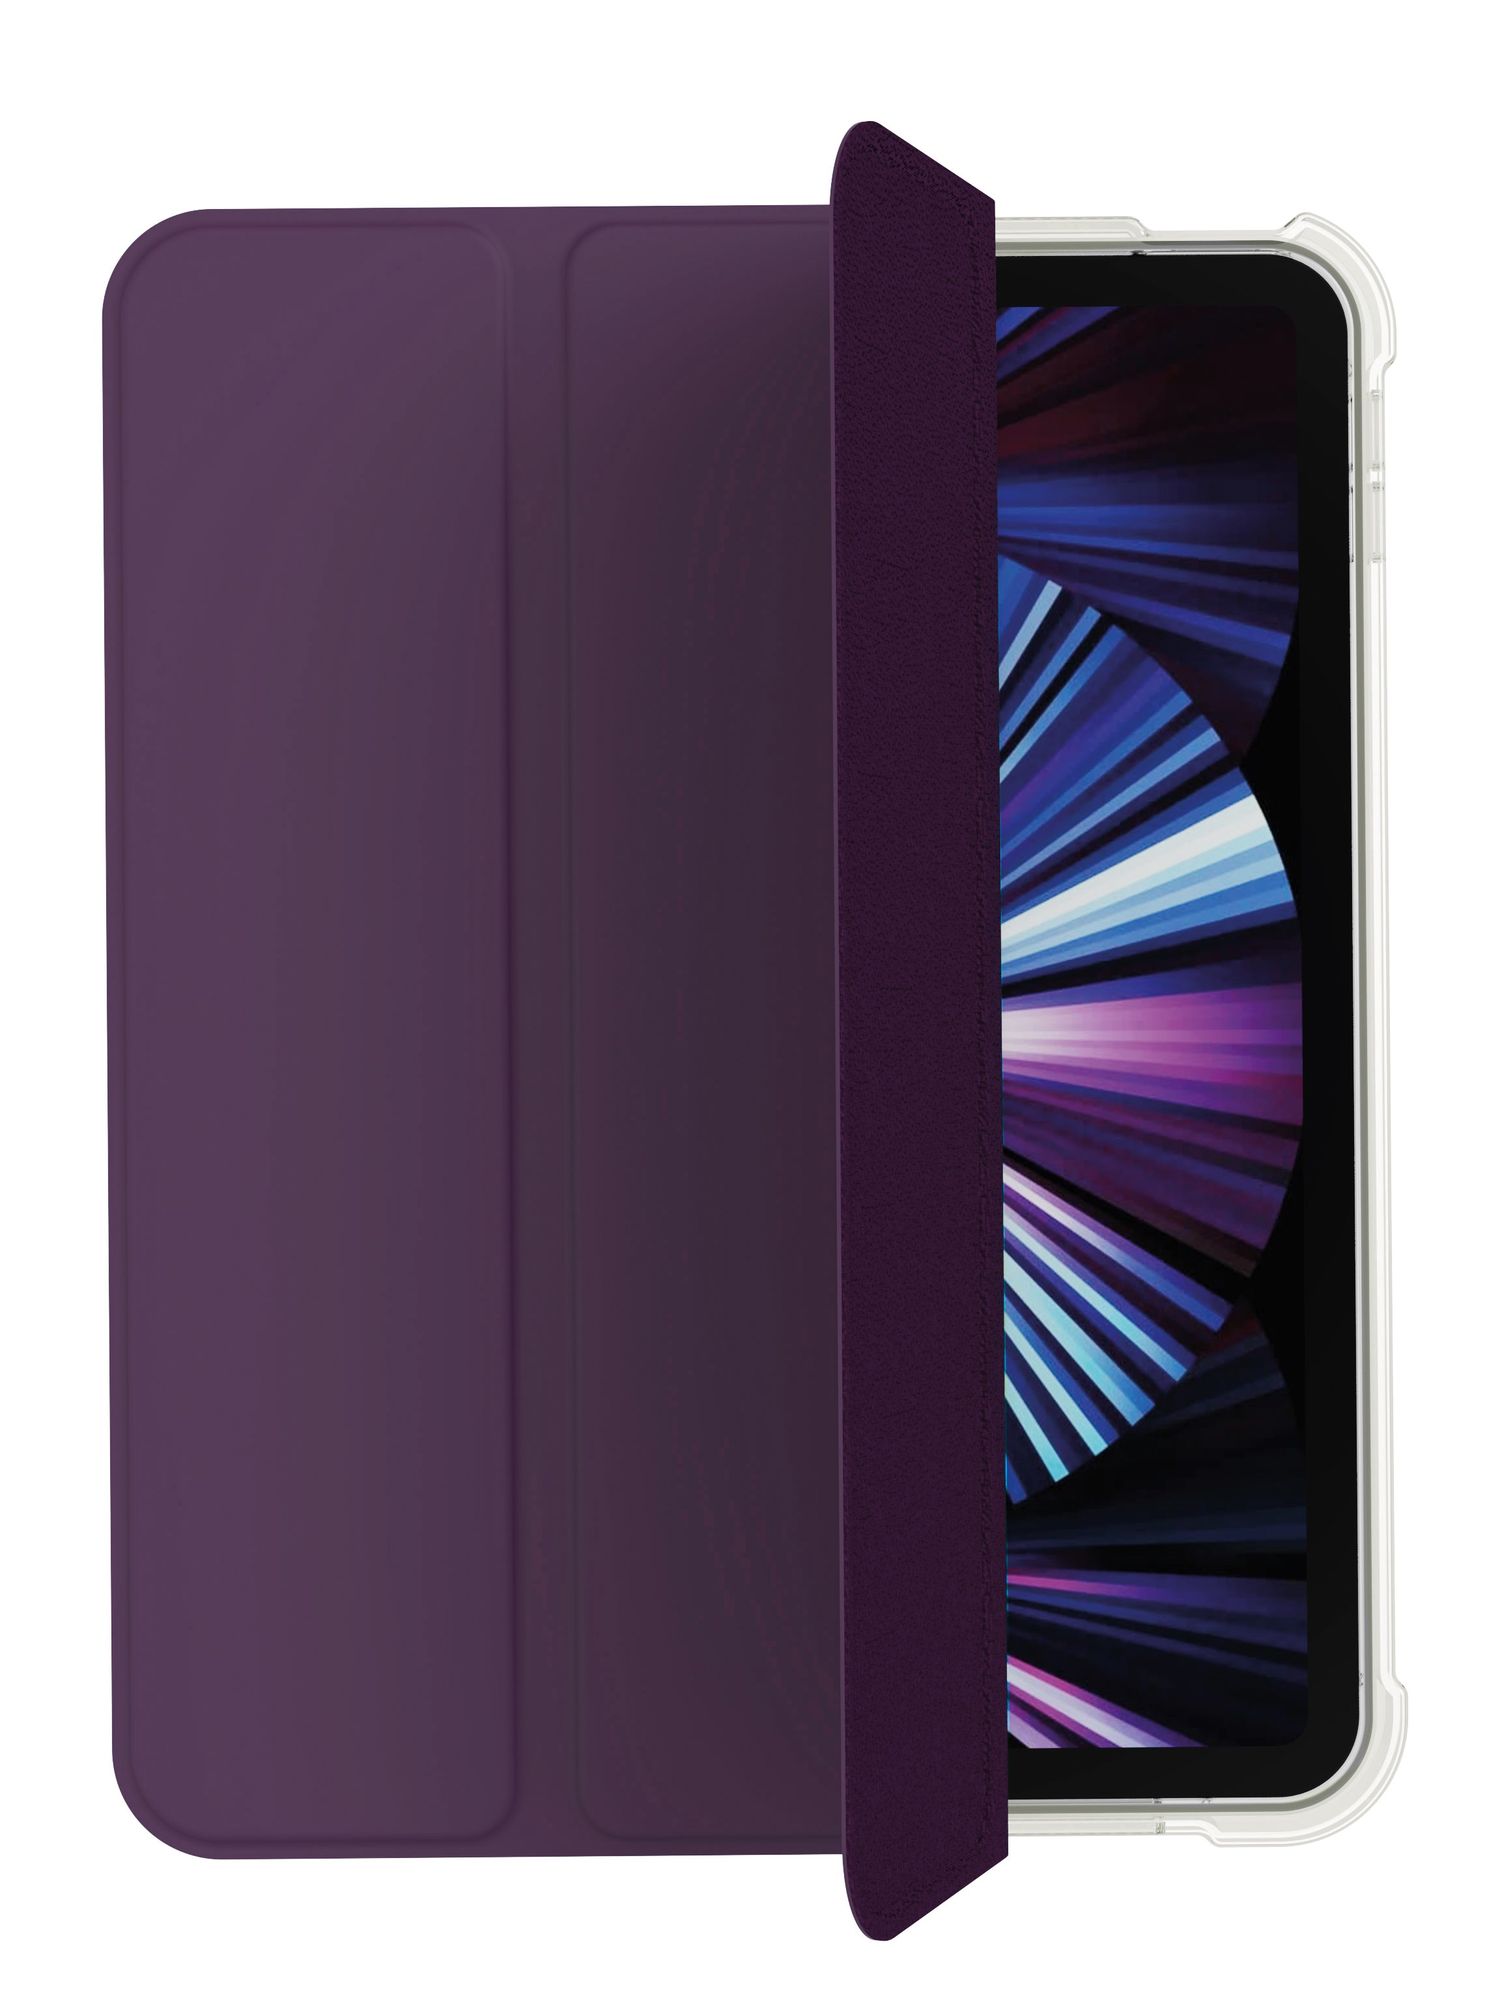 Чехол защитный VLP Dual Folio Case для iPad 10, темно-фиолетовый 2021 original liquid silicone ipad case for 2021 ipad pro 12 9 inch cover for 2021 ipad mini6 case for 2020 ipad air4 ipad case